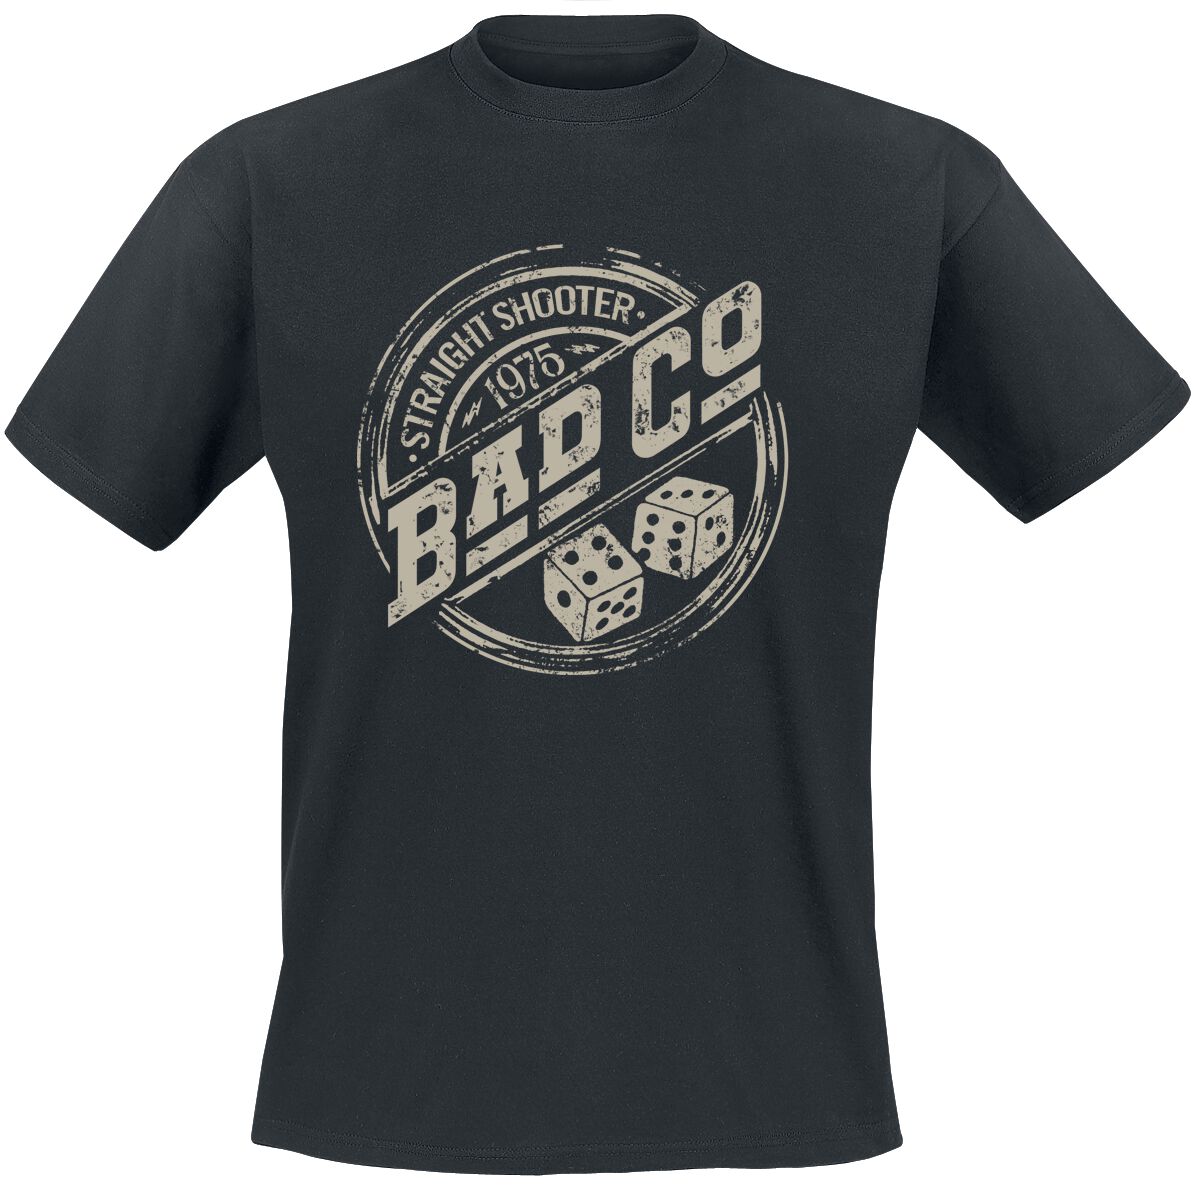 Bad Company T-Shirt - Straight Shooter - S bis XXL - für Männer - Größe M - schwarz  - EMP exklusives Merchandise!